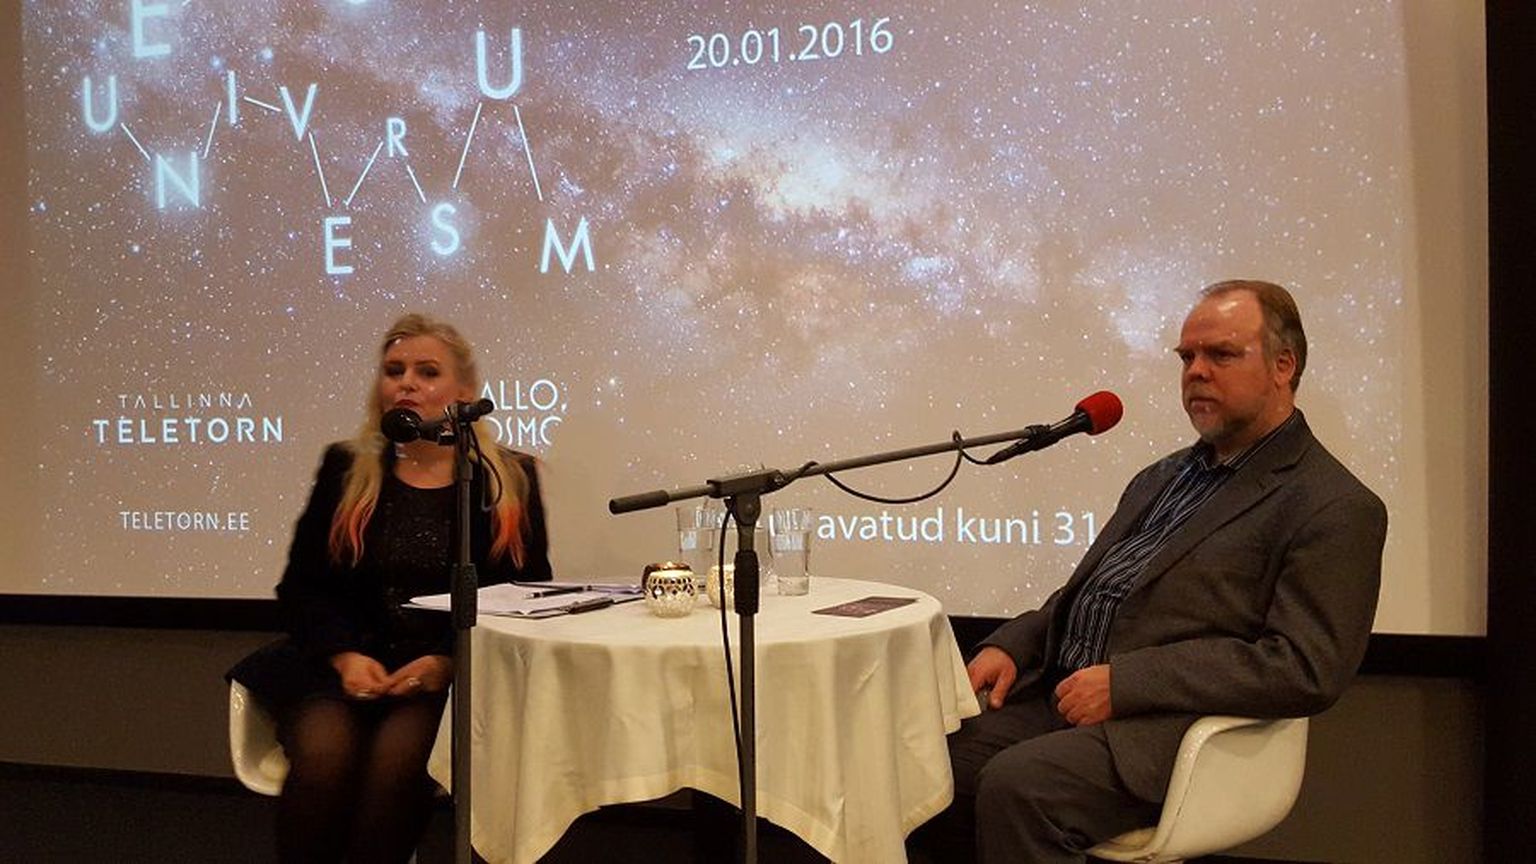 Tallinna Teletorni esimene kosmoseloeng ja raadiosaate "Hallo, kosmos!" salvestus. Saatejuht Ingrid Peek ja astrofüüsik Laurits Leedjärv.